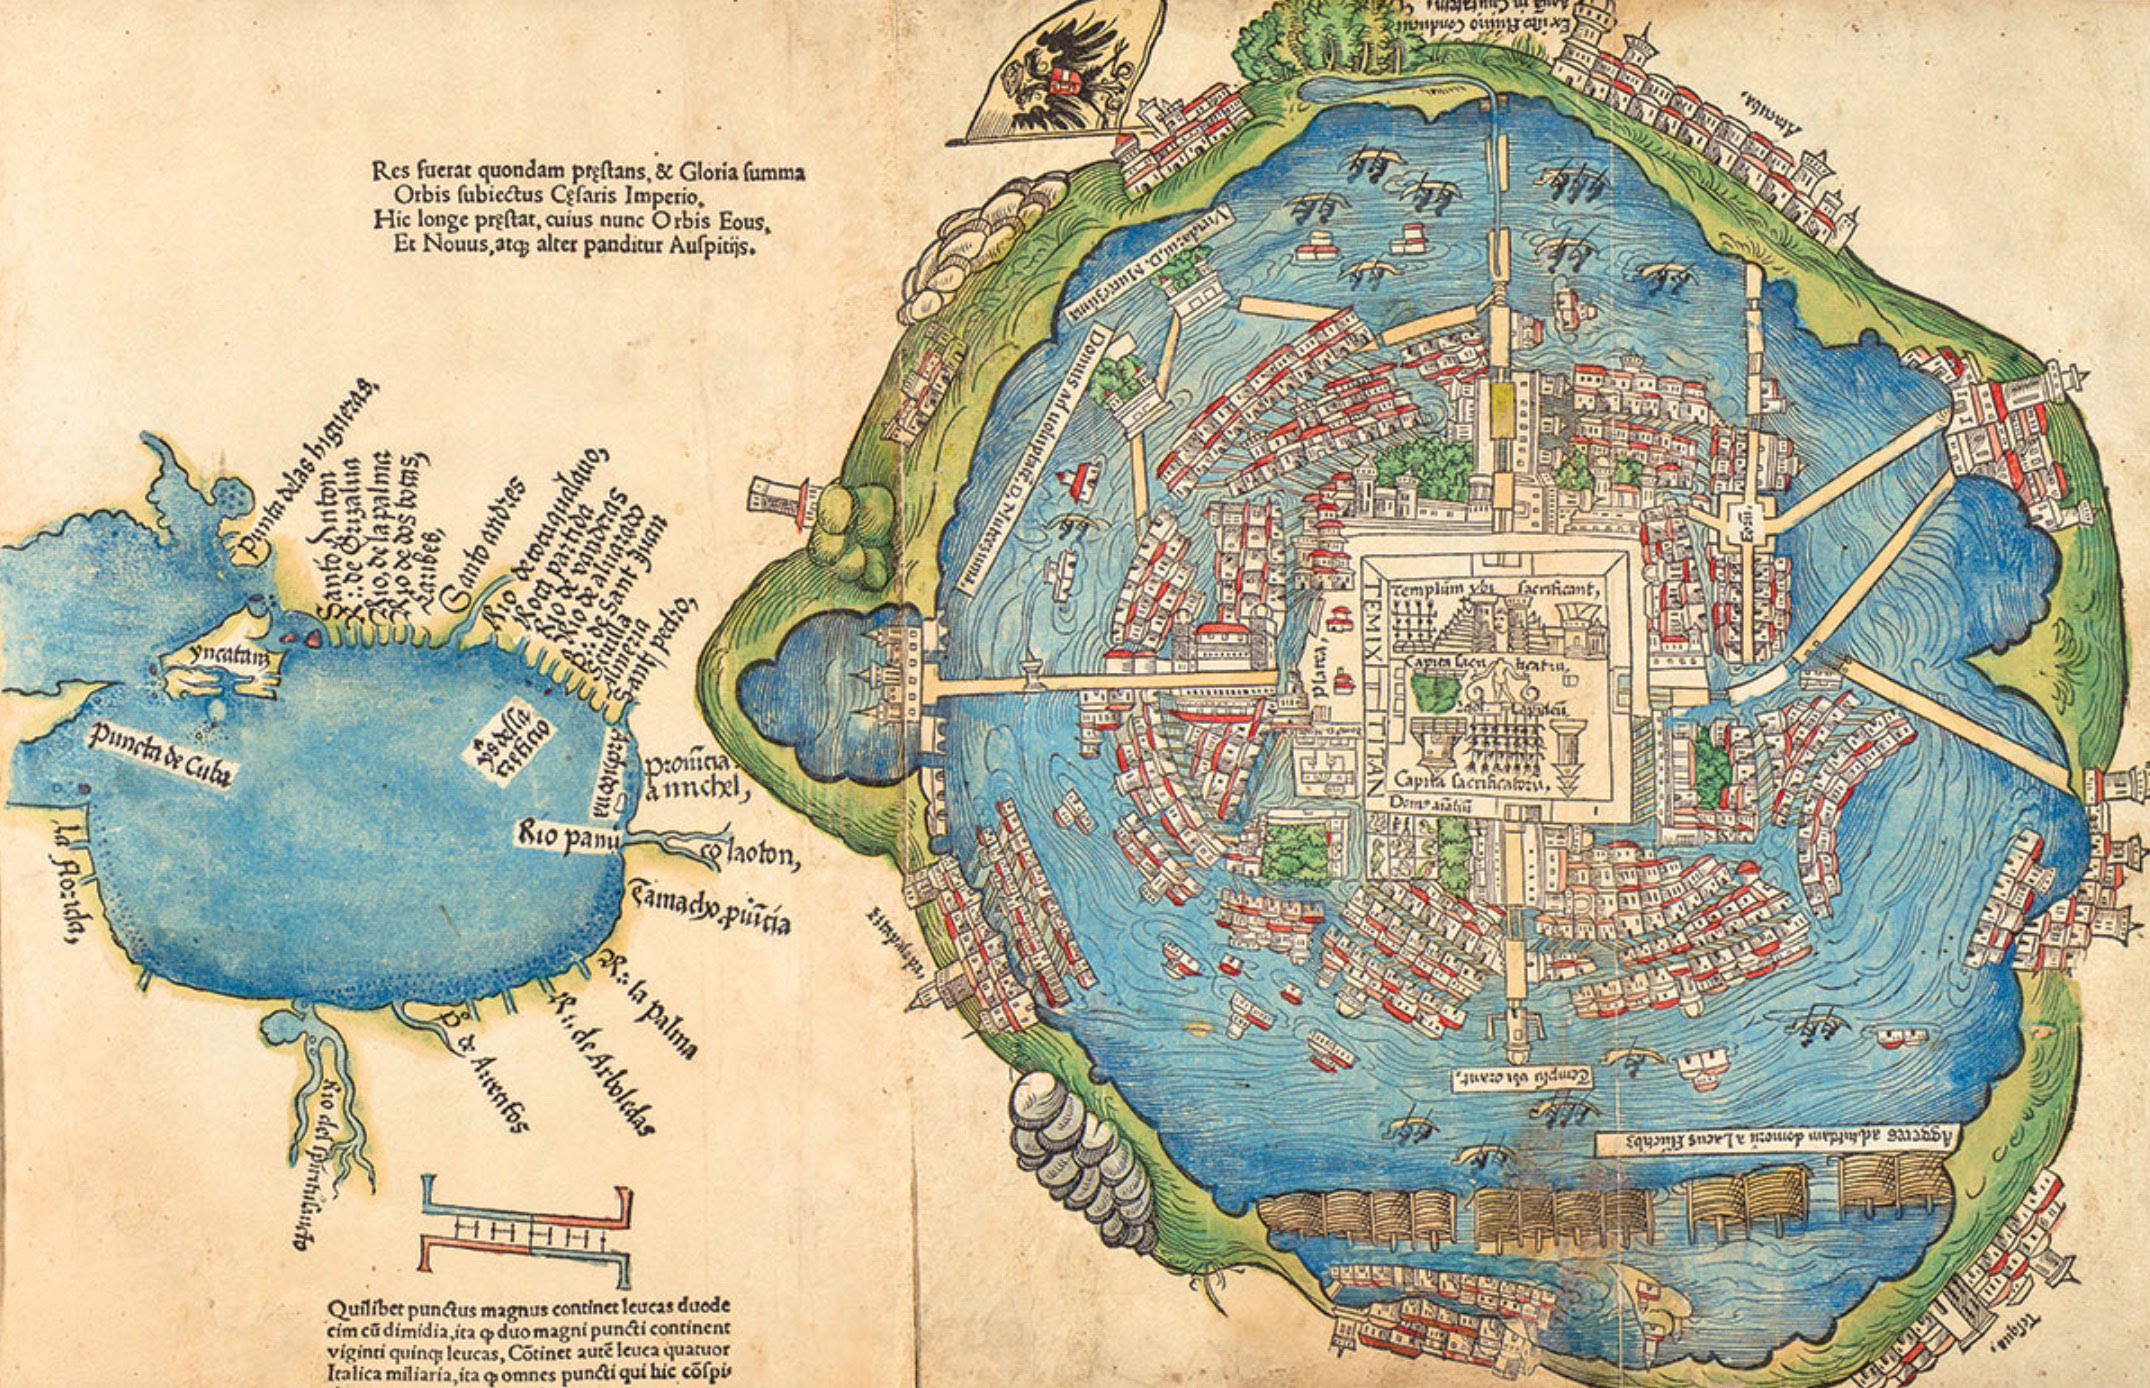 Presenta Museo de la Ciudad de México una mirada a la capital a través de sus mapas